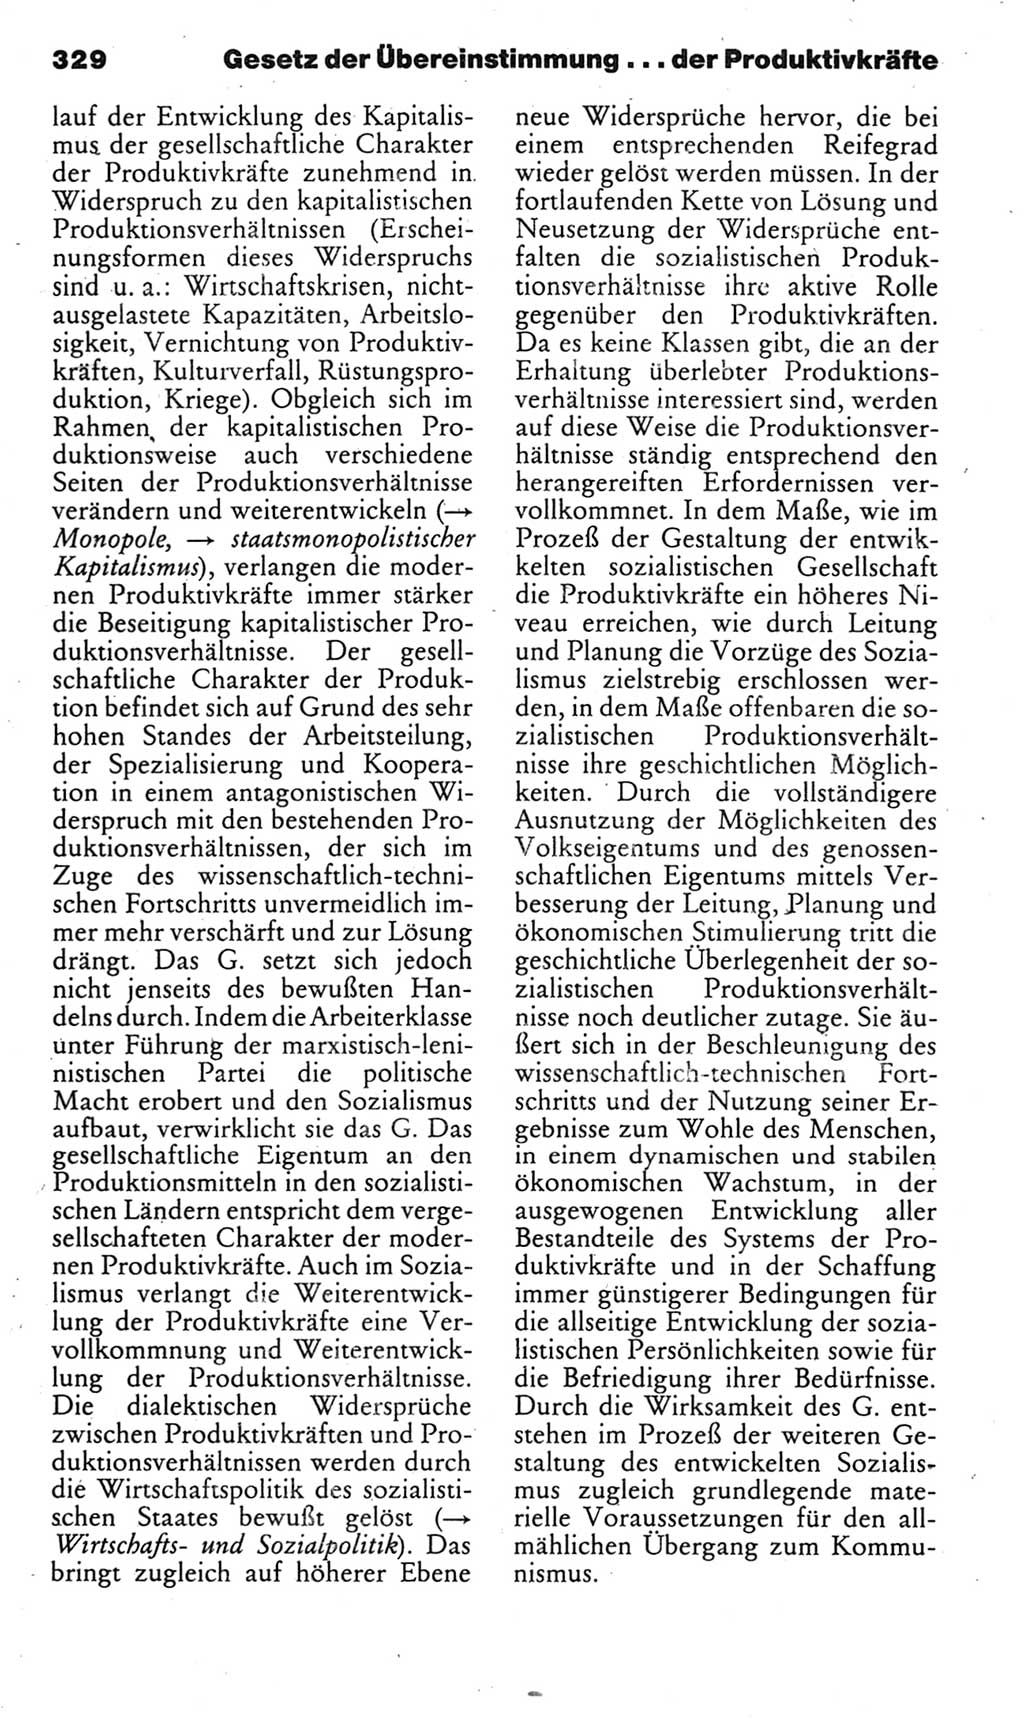 Kleines politisches Wörterbuch [Deutsche Demokratische Republik (DDR)] 1985, Seite 329 (Kl. pol. Wb. DDR 1985, S. 329)